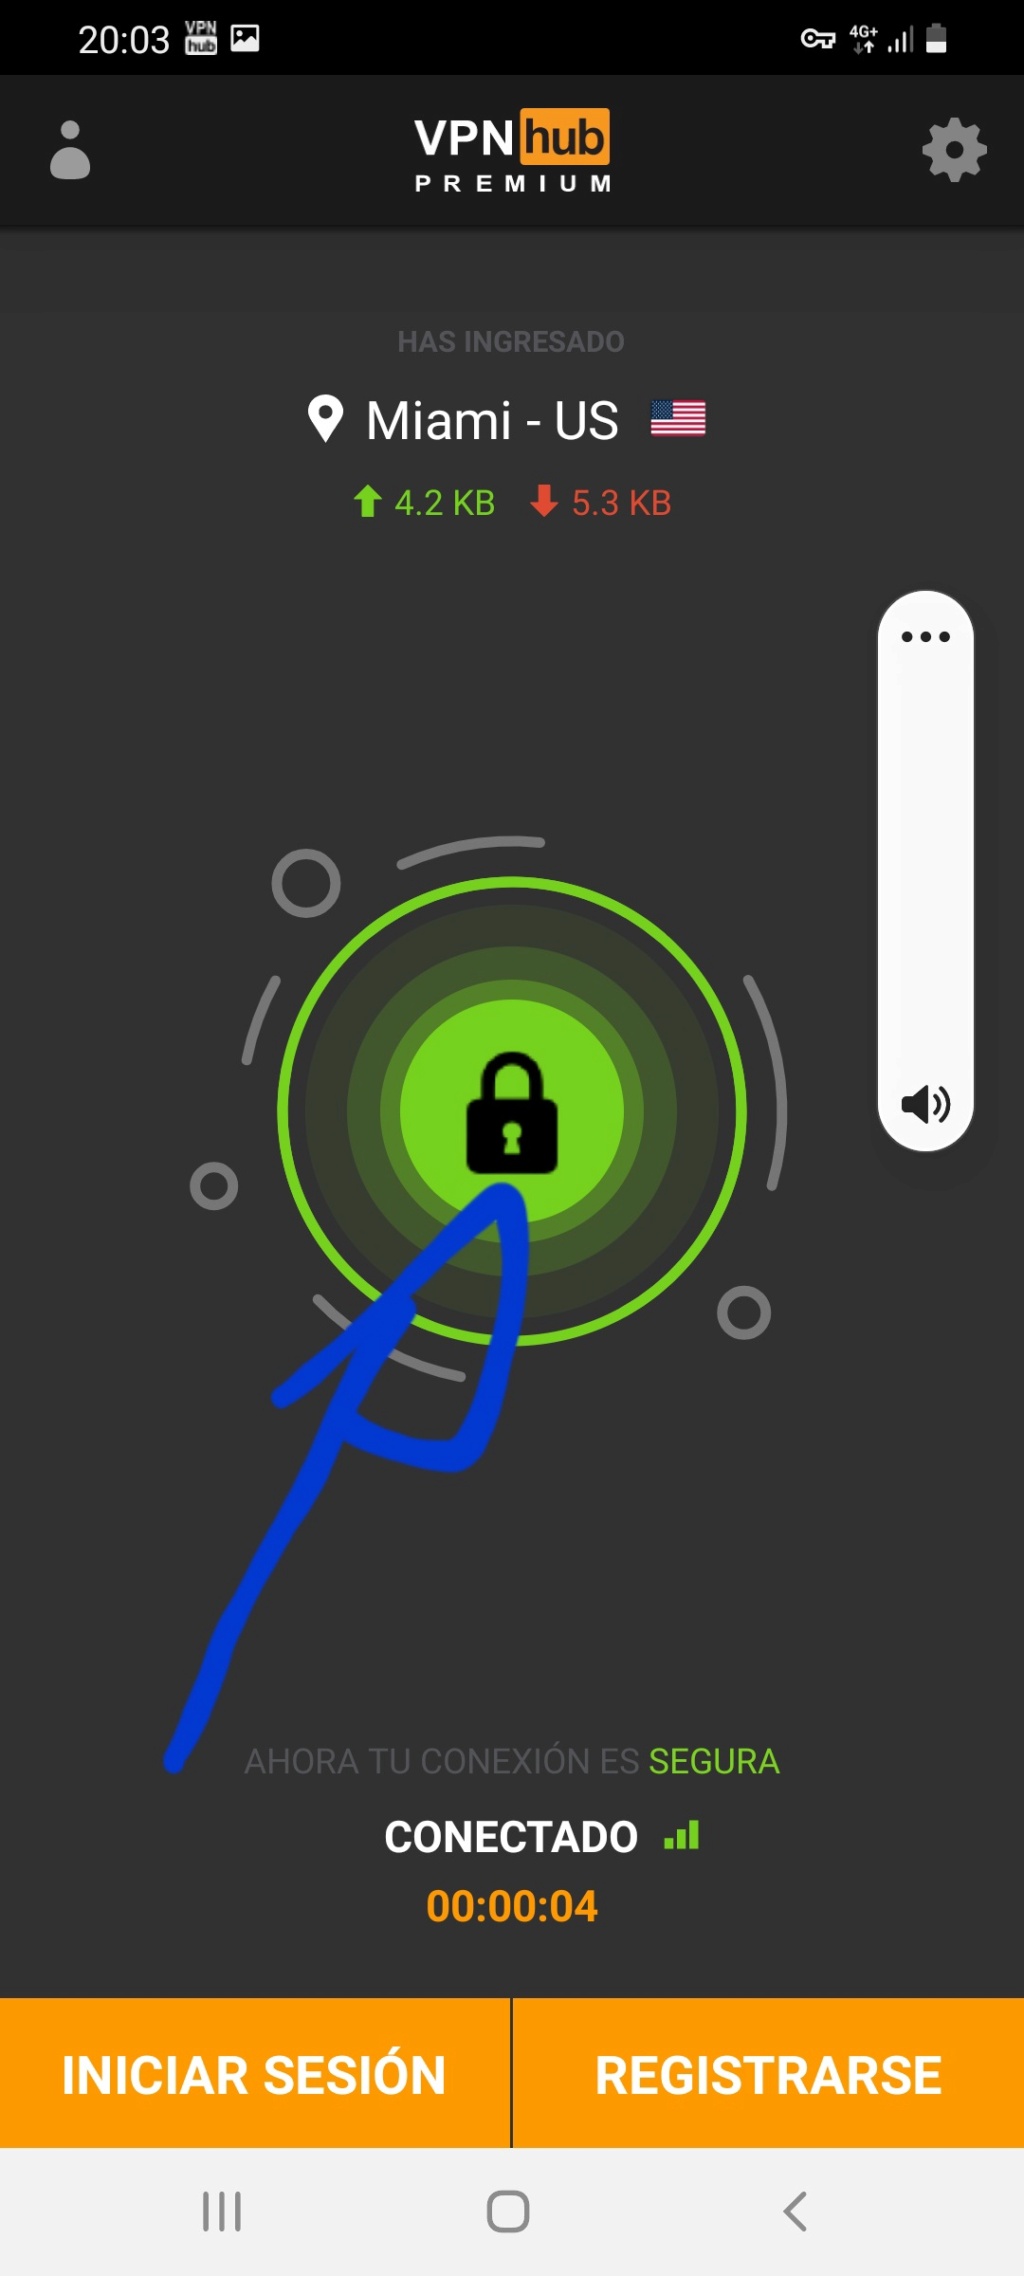 Conexión a Internet segura , con VPN Hub Screen19